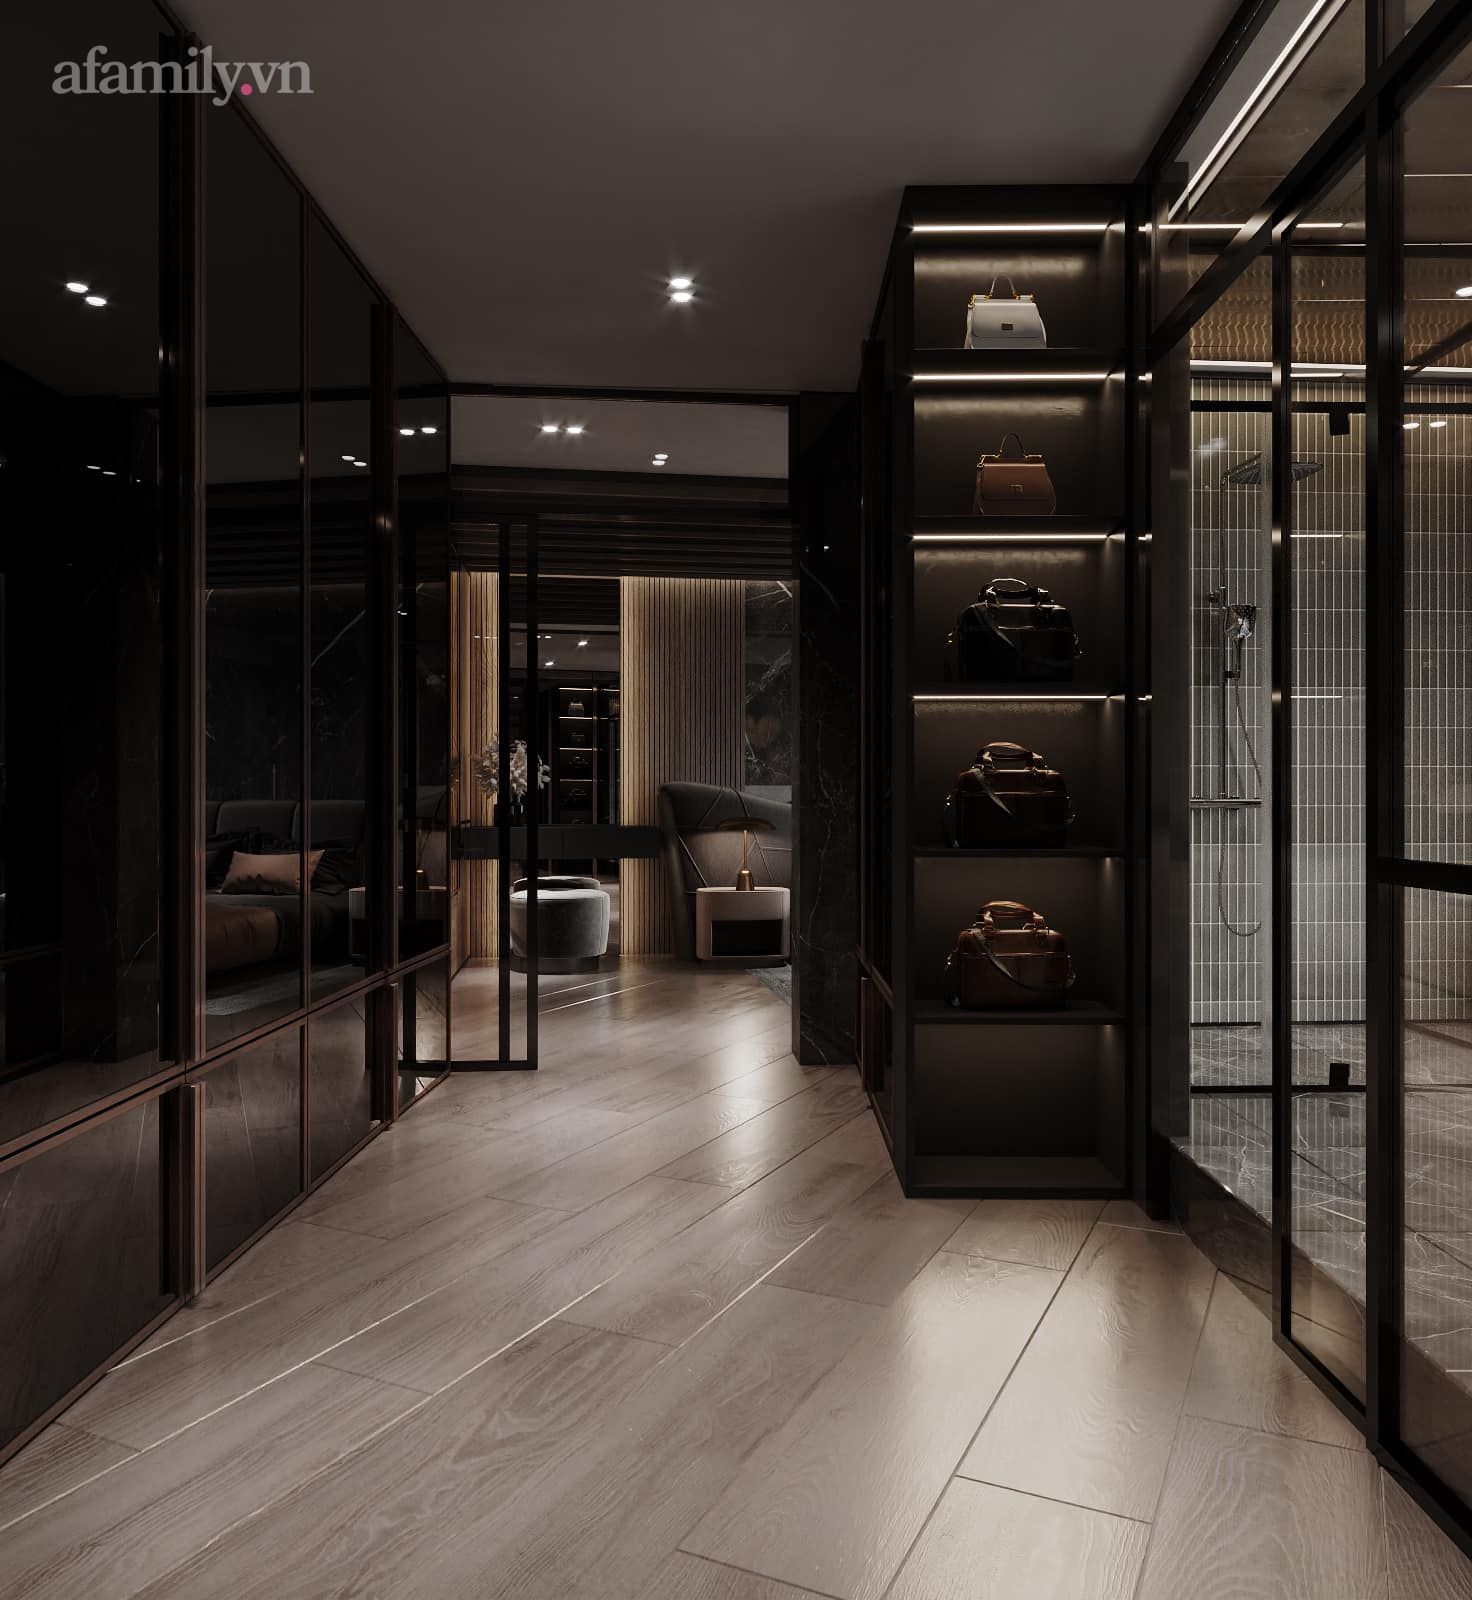 Căn penthouse duplex của nữ CEO Hà Nội bao trọn view sông Hồng, thiết kế luxury hiện đại tone chủ đạo nâu đen cực huyền bí - Ảnh 7.